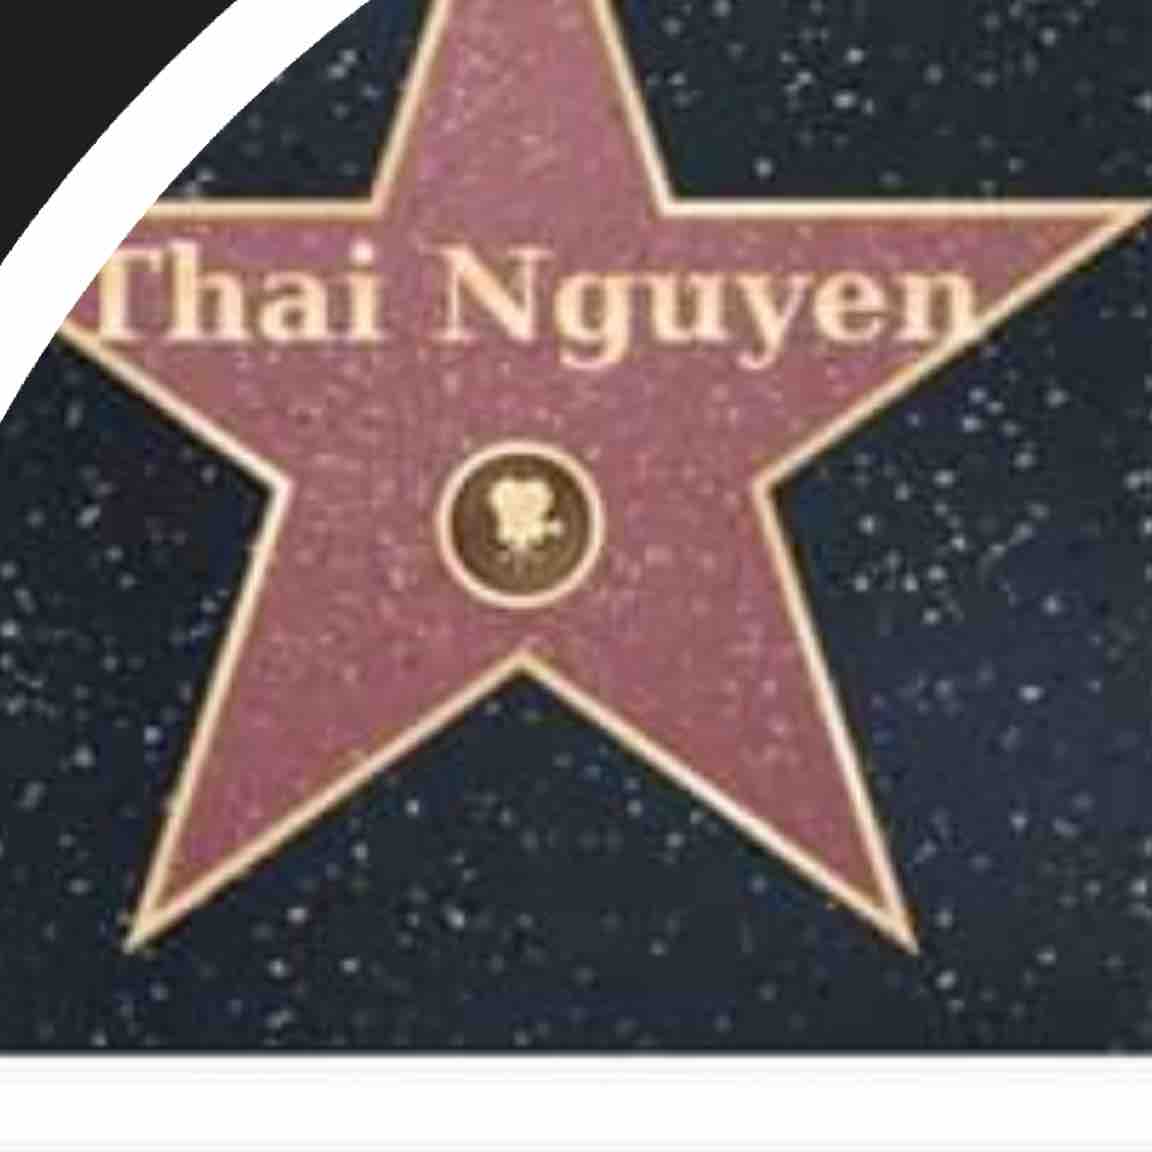 Thai Nguyen